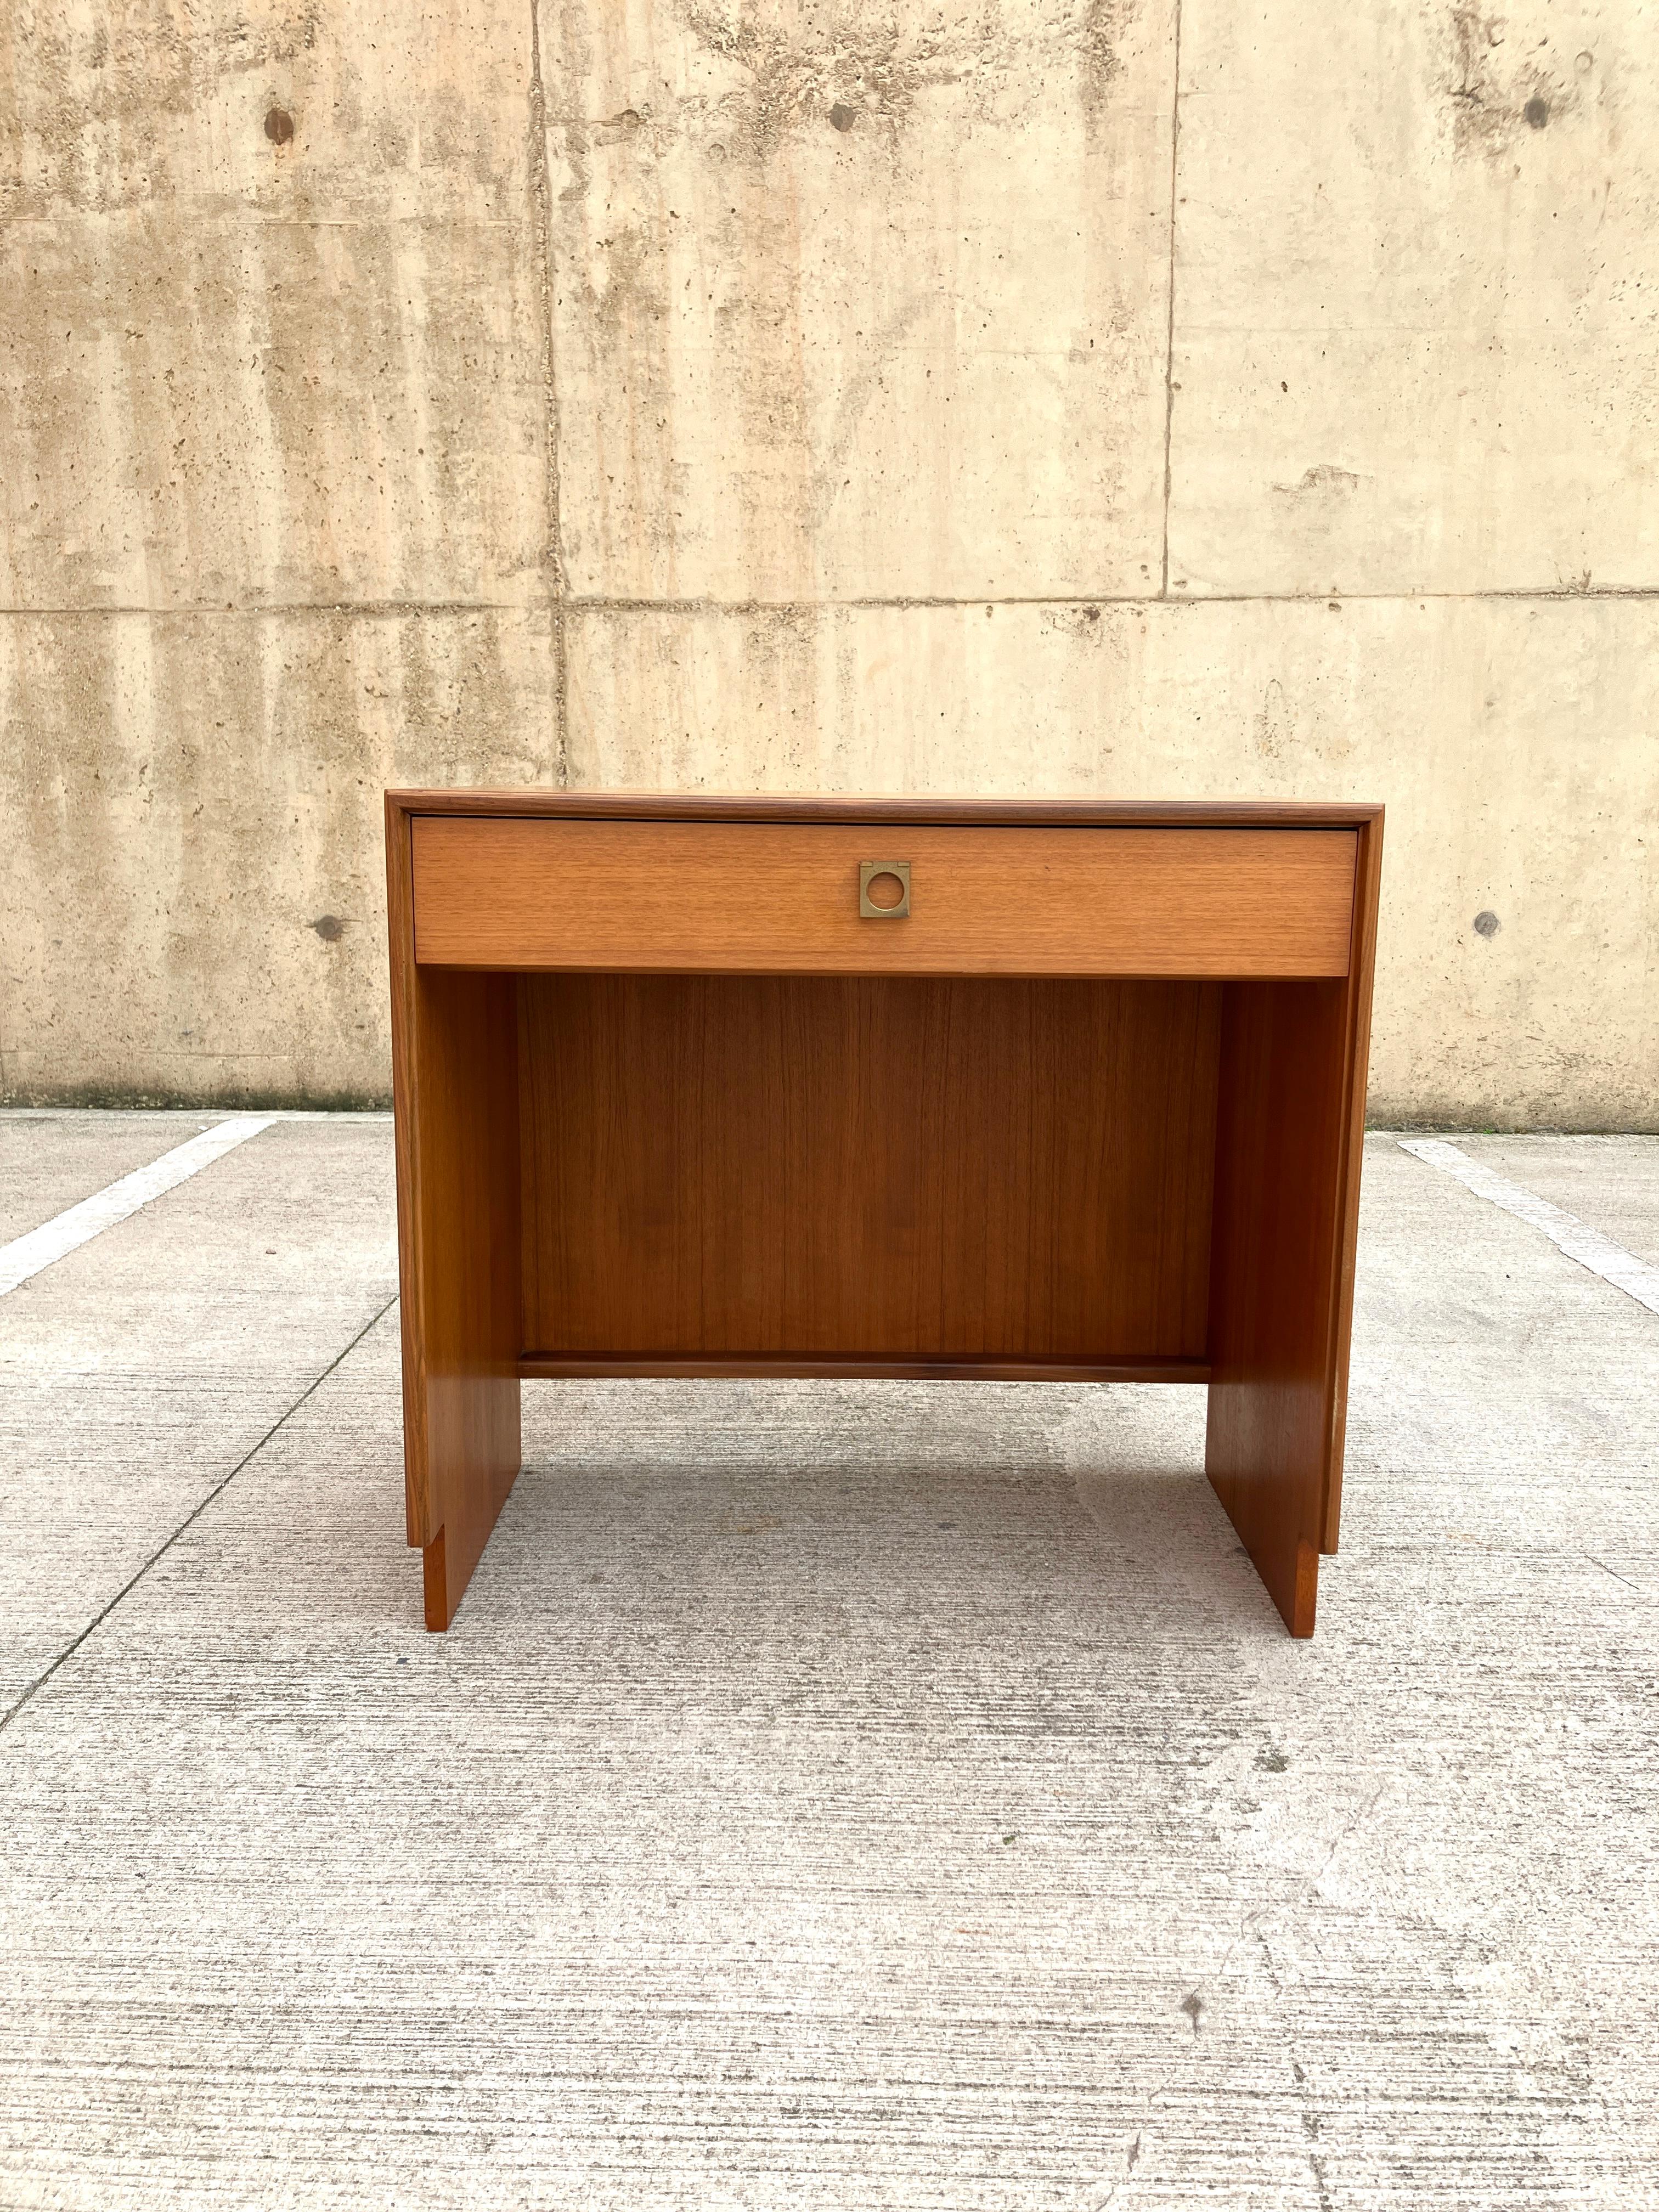 Ein kompakter Mid-Century-Schreibtisch mit Schublade von G-Plan. 

Dieser Frisiertisch aus Teakholz wurde 1967 von Richard Bennett entworfen und hat ein minimalistisches und modernes Design. Der Schreibtisch zeigt einen deutlichen dänischen